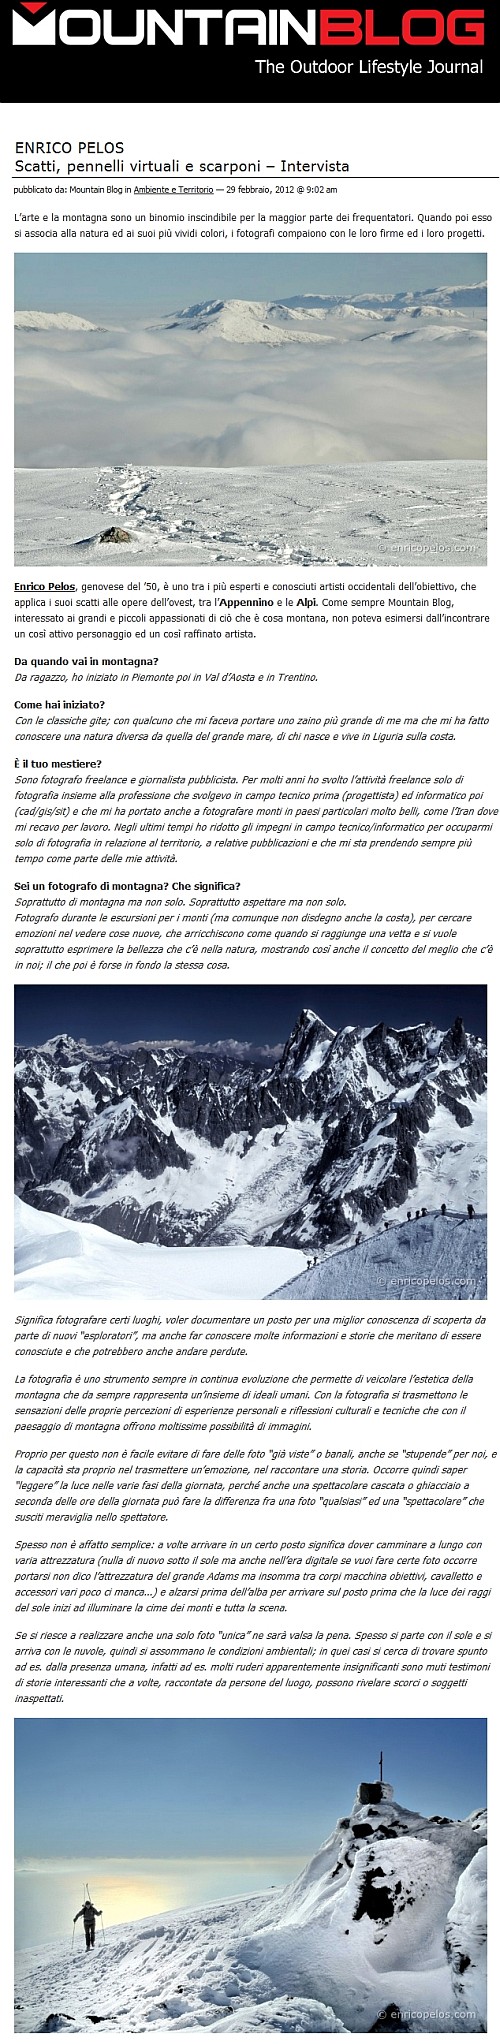 Intervista per Mountain Blog da parte di Christian Roccati